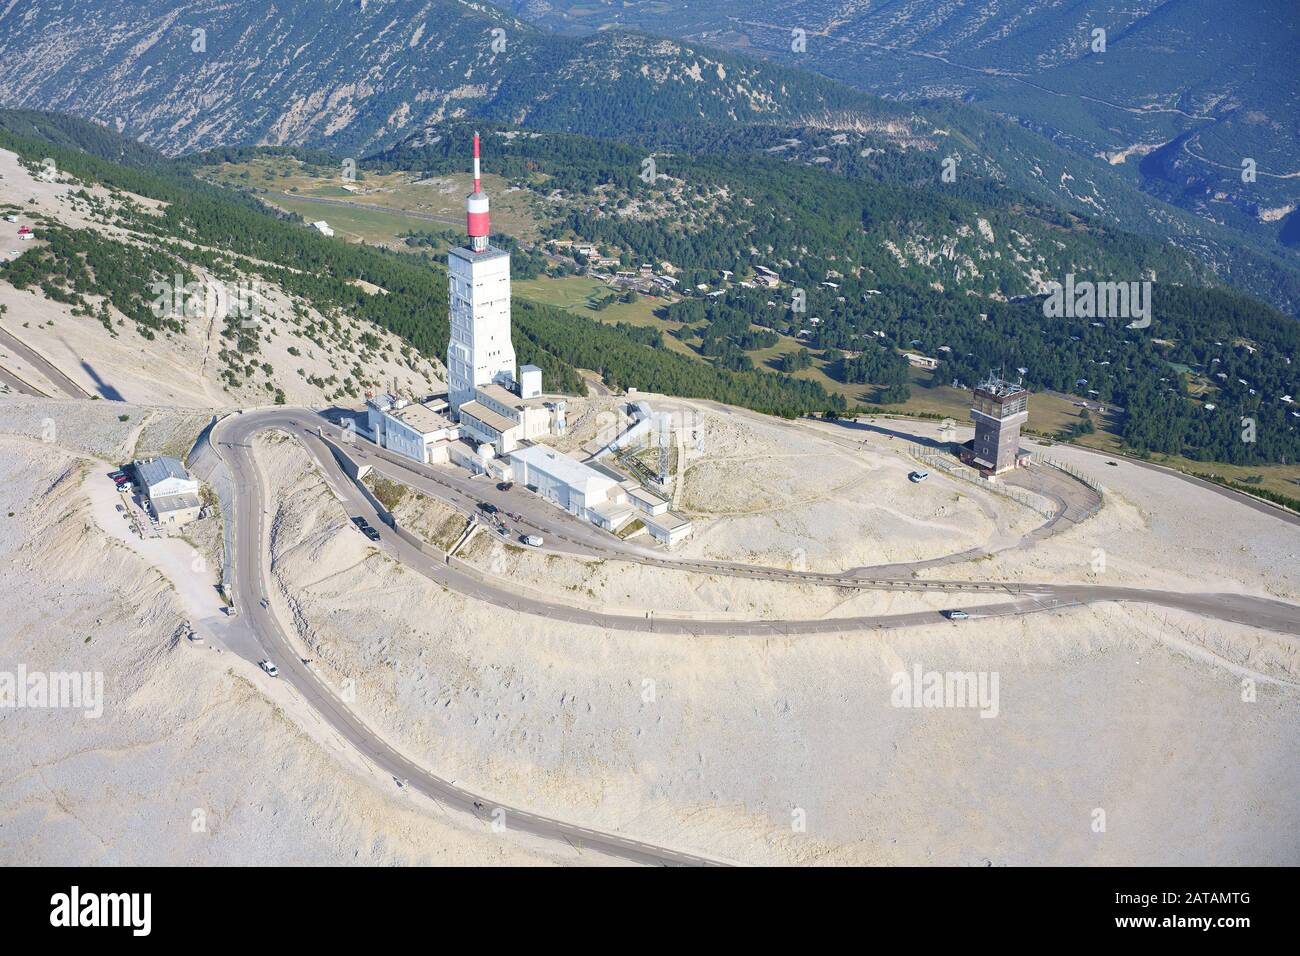 VUE AÉRIENNE. Sommet du Mont Ventoux (altitude : 1909 mètres) avec son antenne de télécommunication. Béthin, Vaucluse, Provence-Alpes-Côte d'Azur, France. Banque D'Images